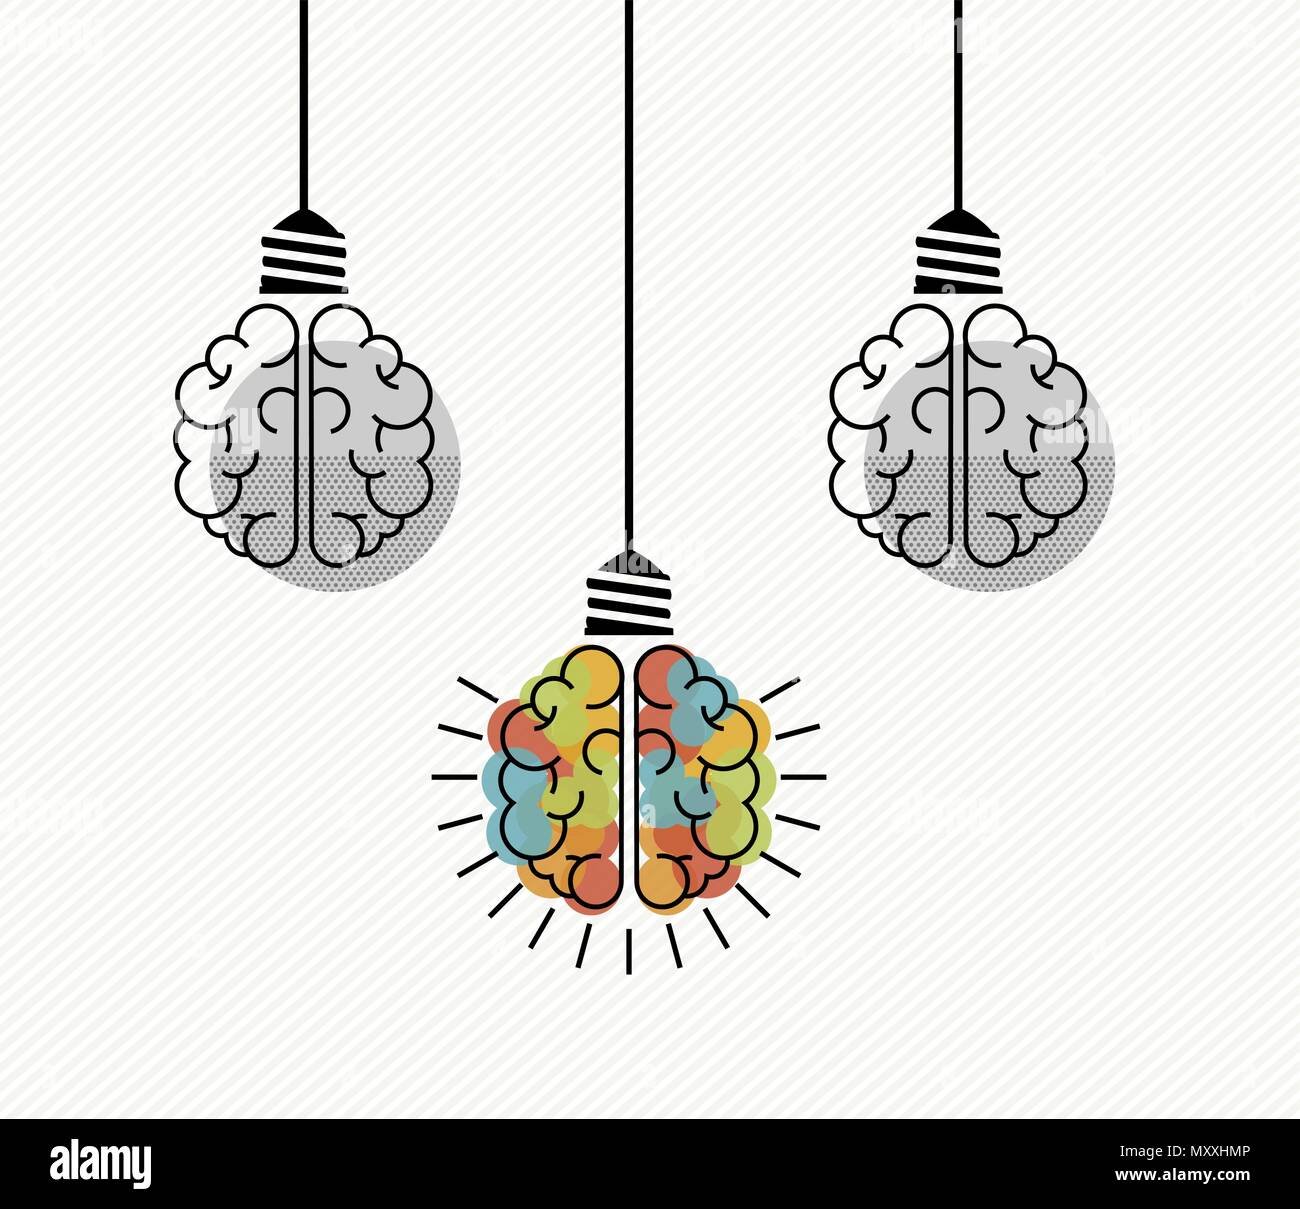 La pensée créative concept illustration du cerveau humain en tant qu'ampoule électrique pour solutions d'affaires, le remue-méninges. Vecteur EPS10. Illustration de Vecteur